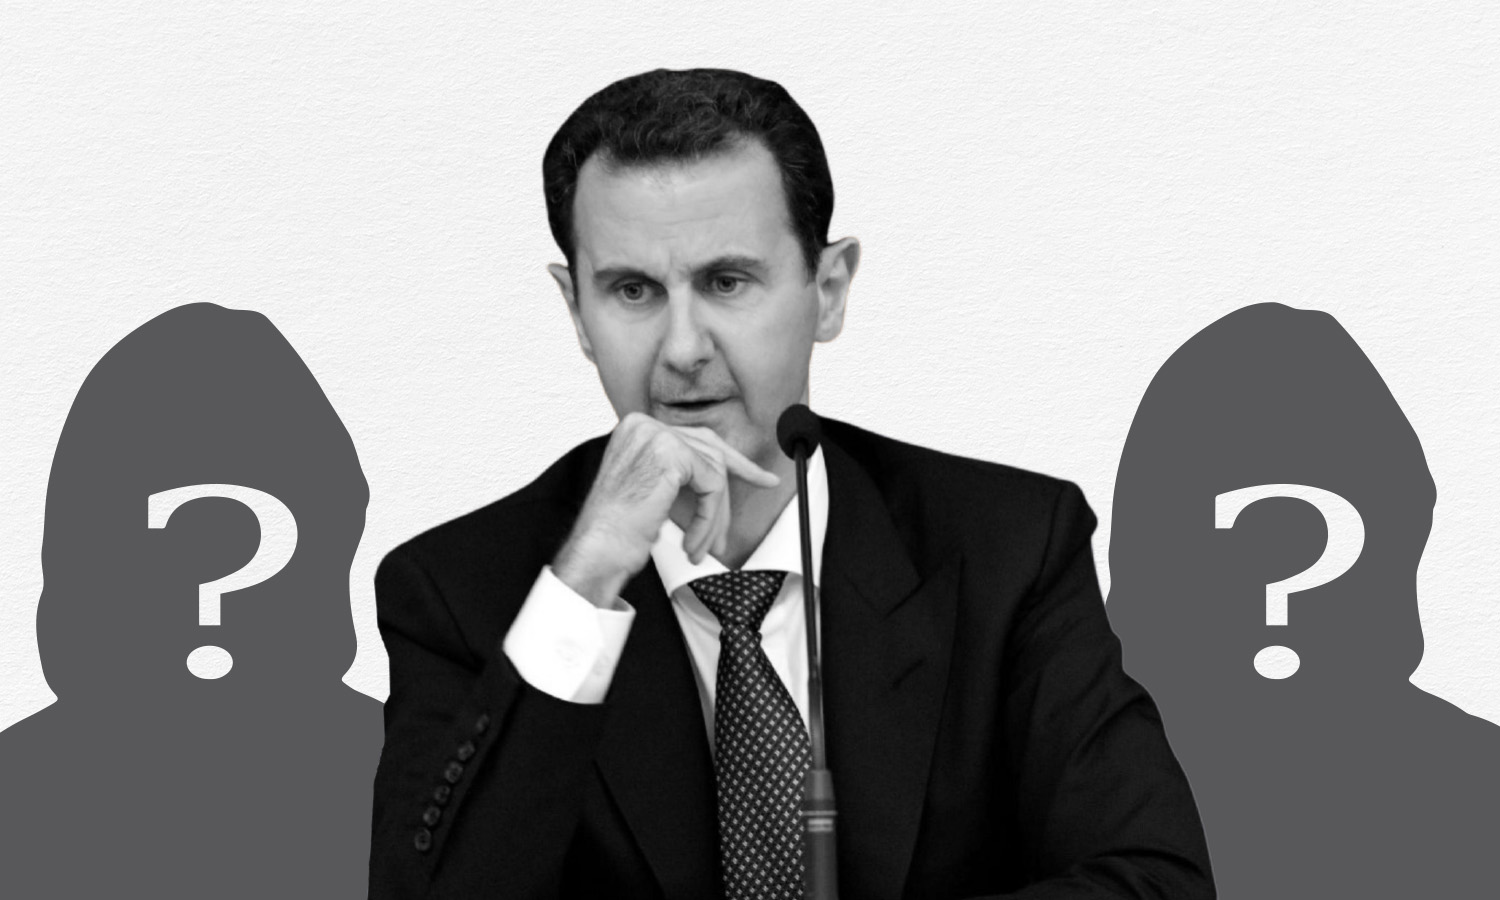 President of the Syrian regime Bashar al-Assad (edited by Enab Baladi)